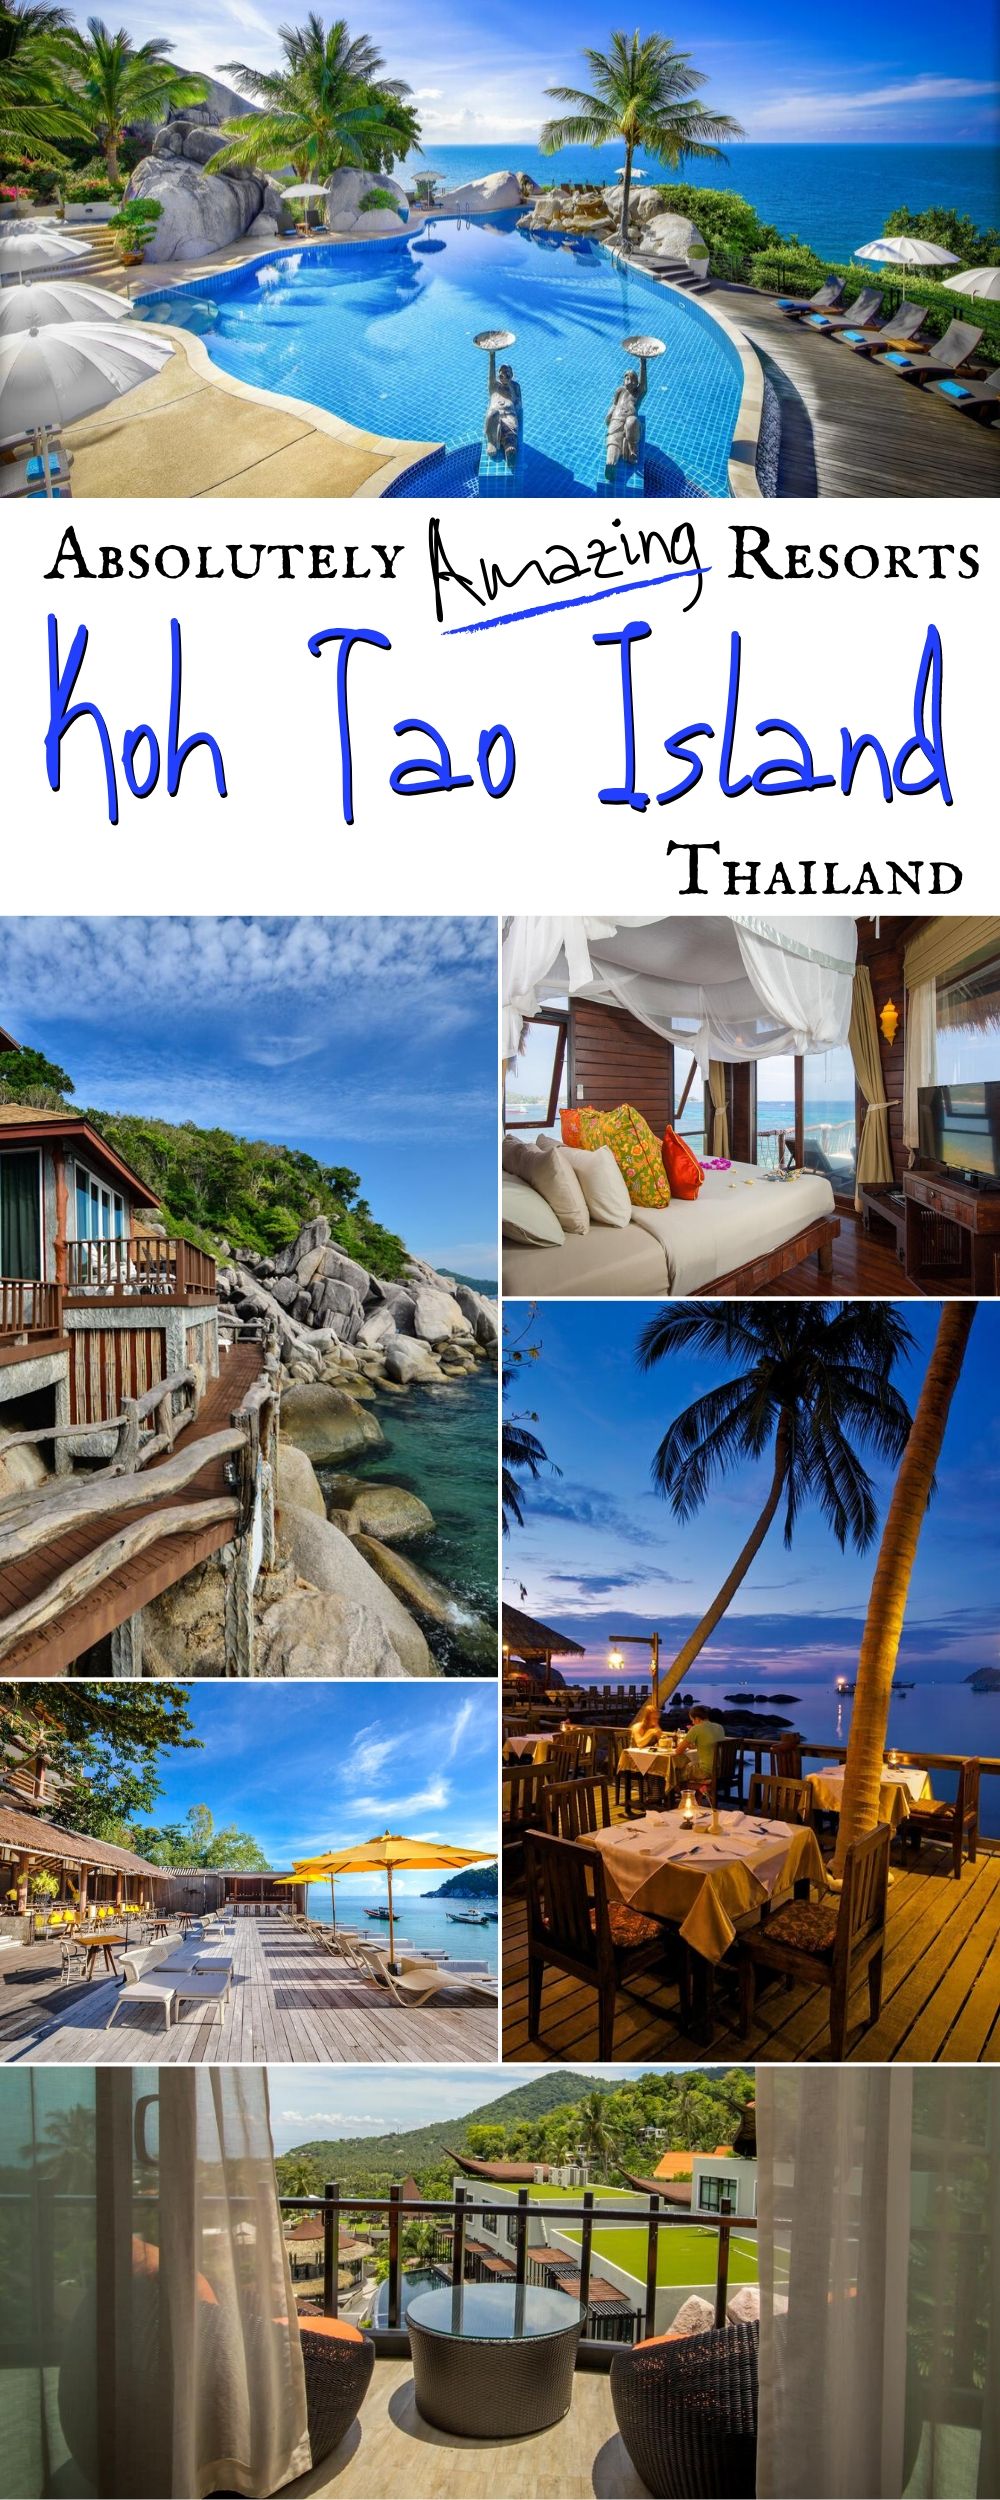 Best Resorts on Koh Tao Island, Thailand on Pinterest